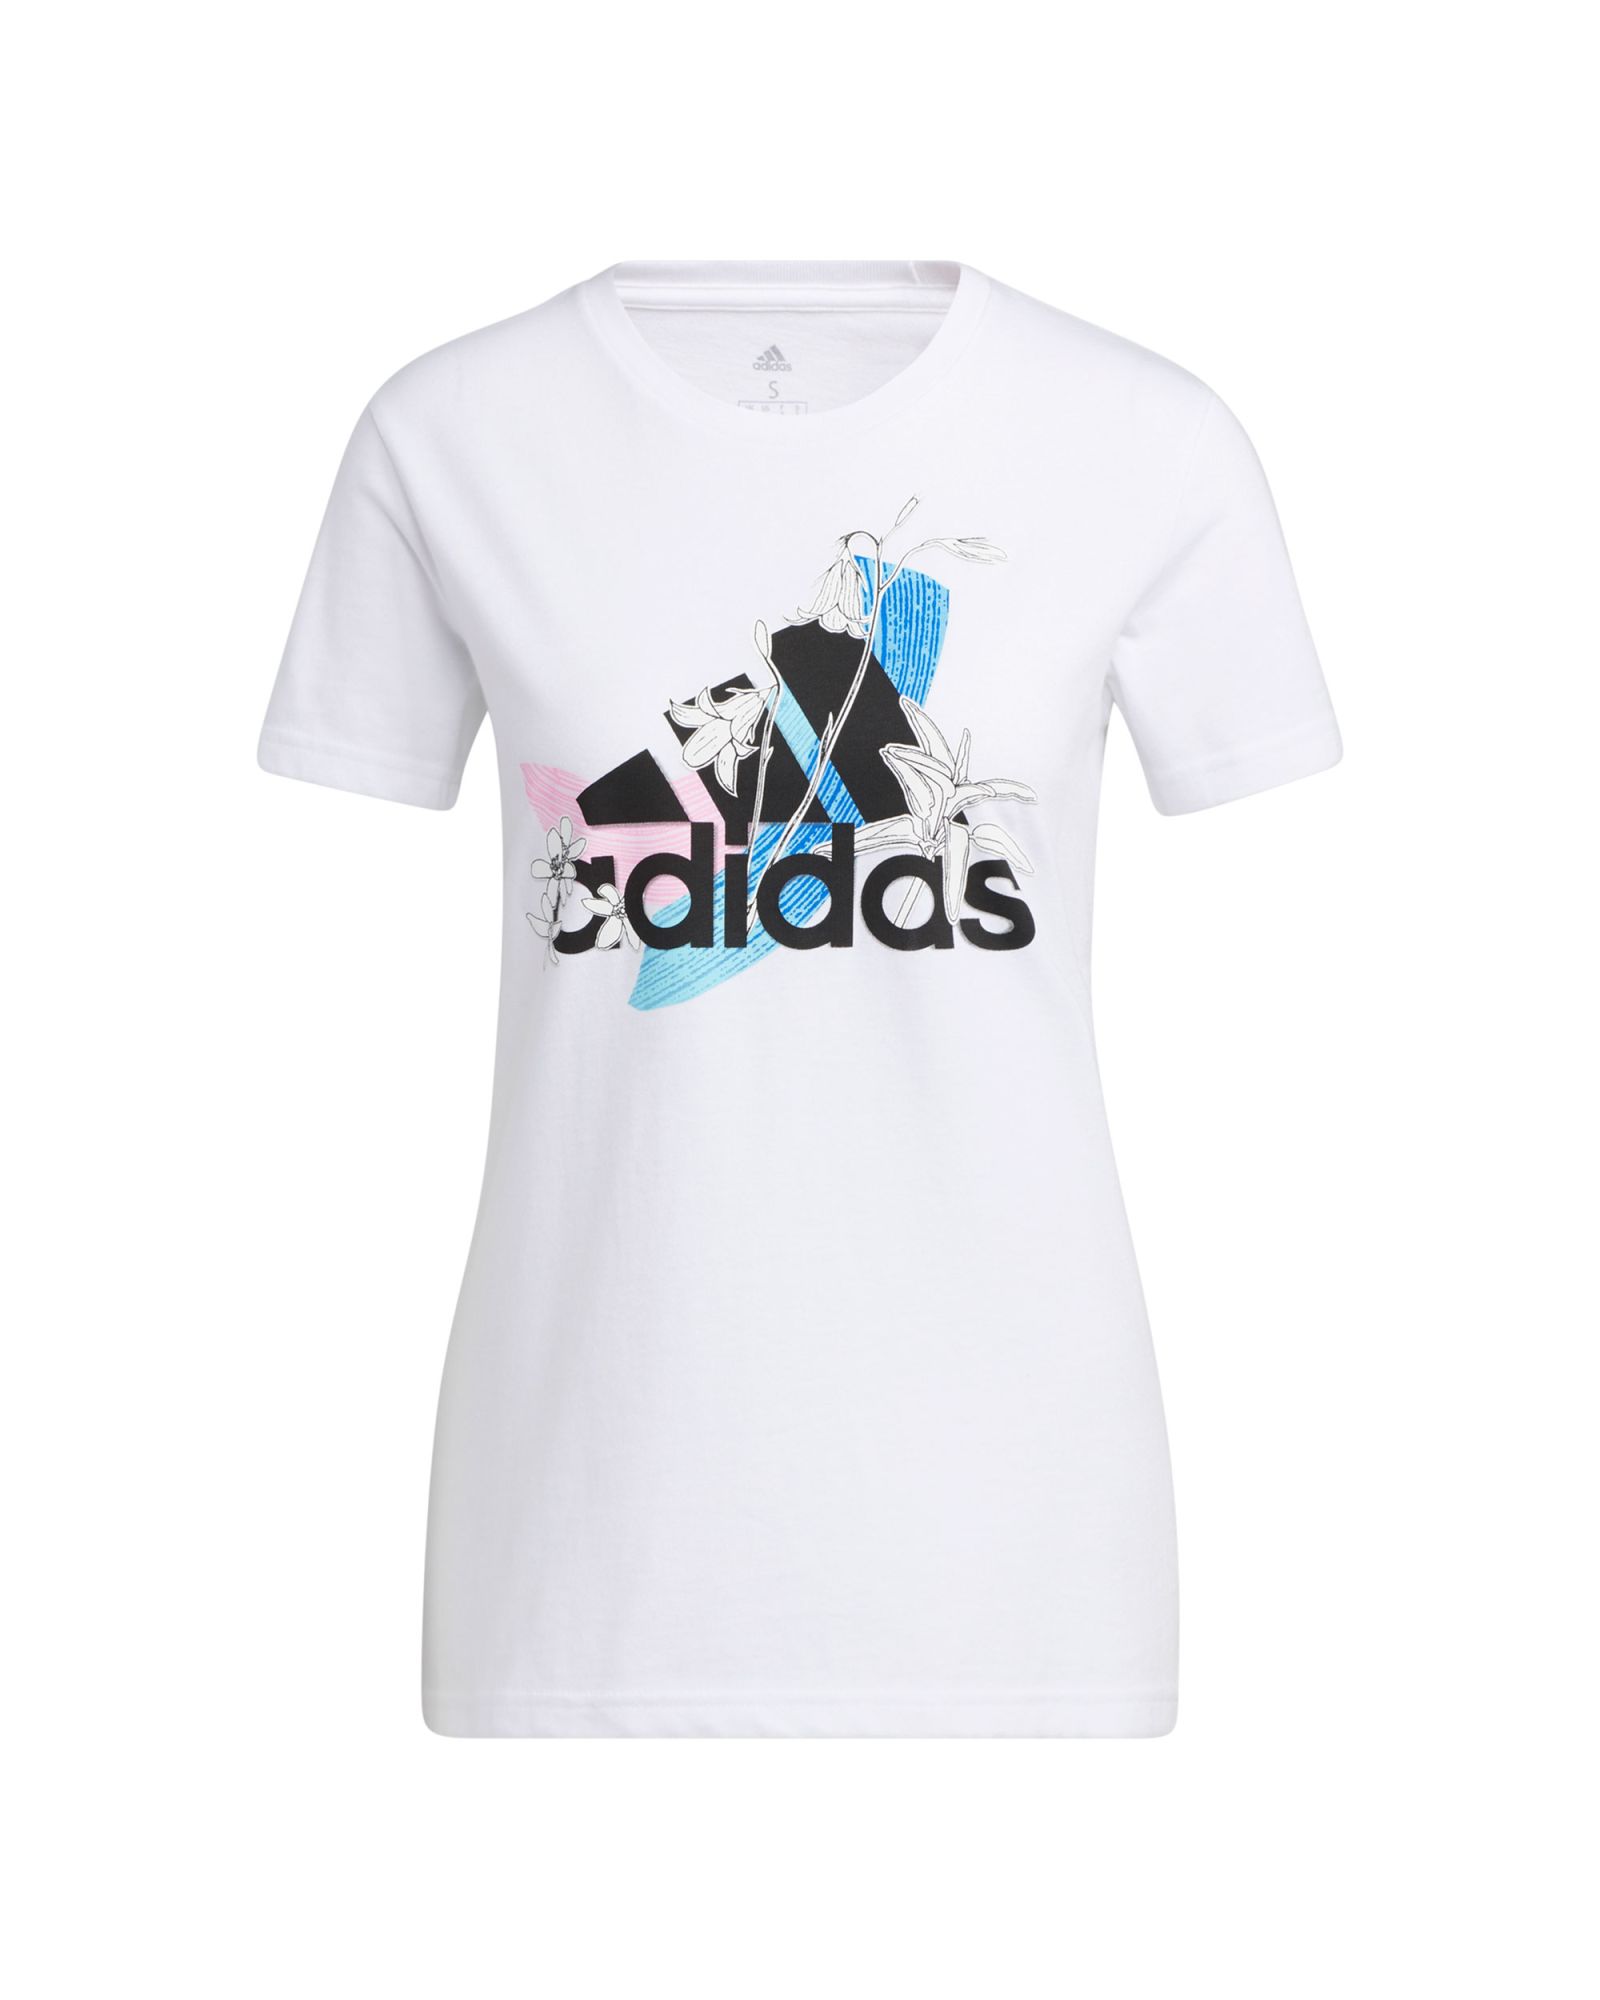 Camiseta adidas Nini Sum Graphic Mujer Blanco - Fútbol Factory